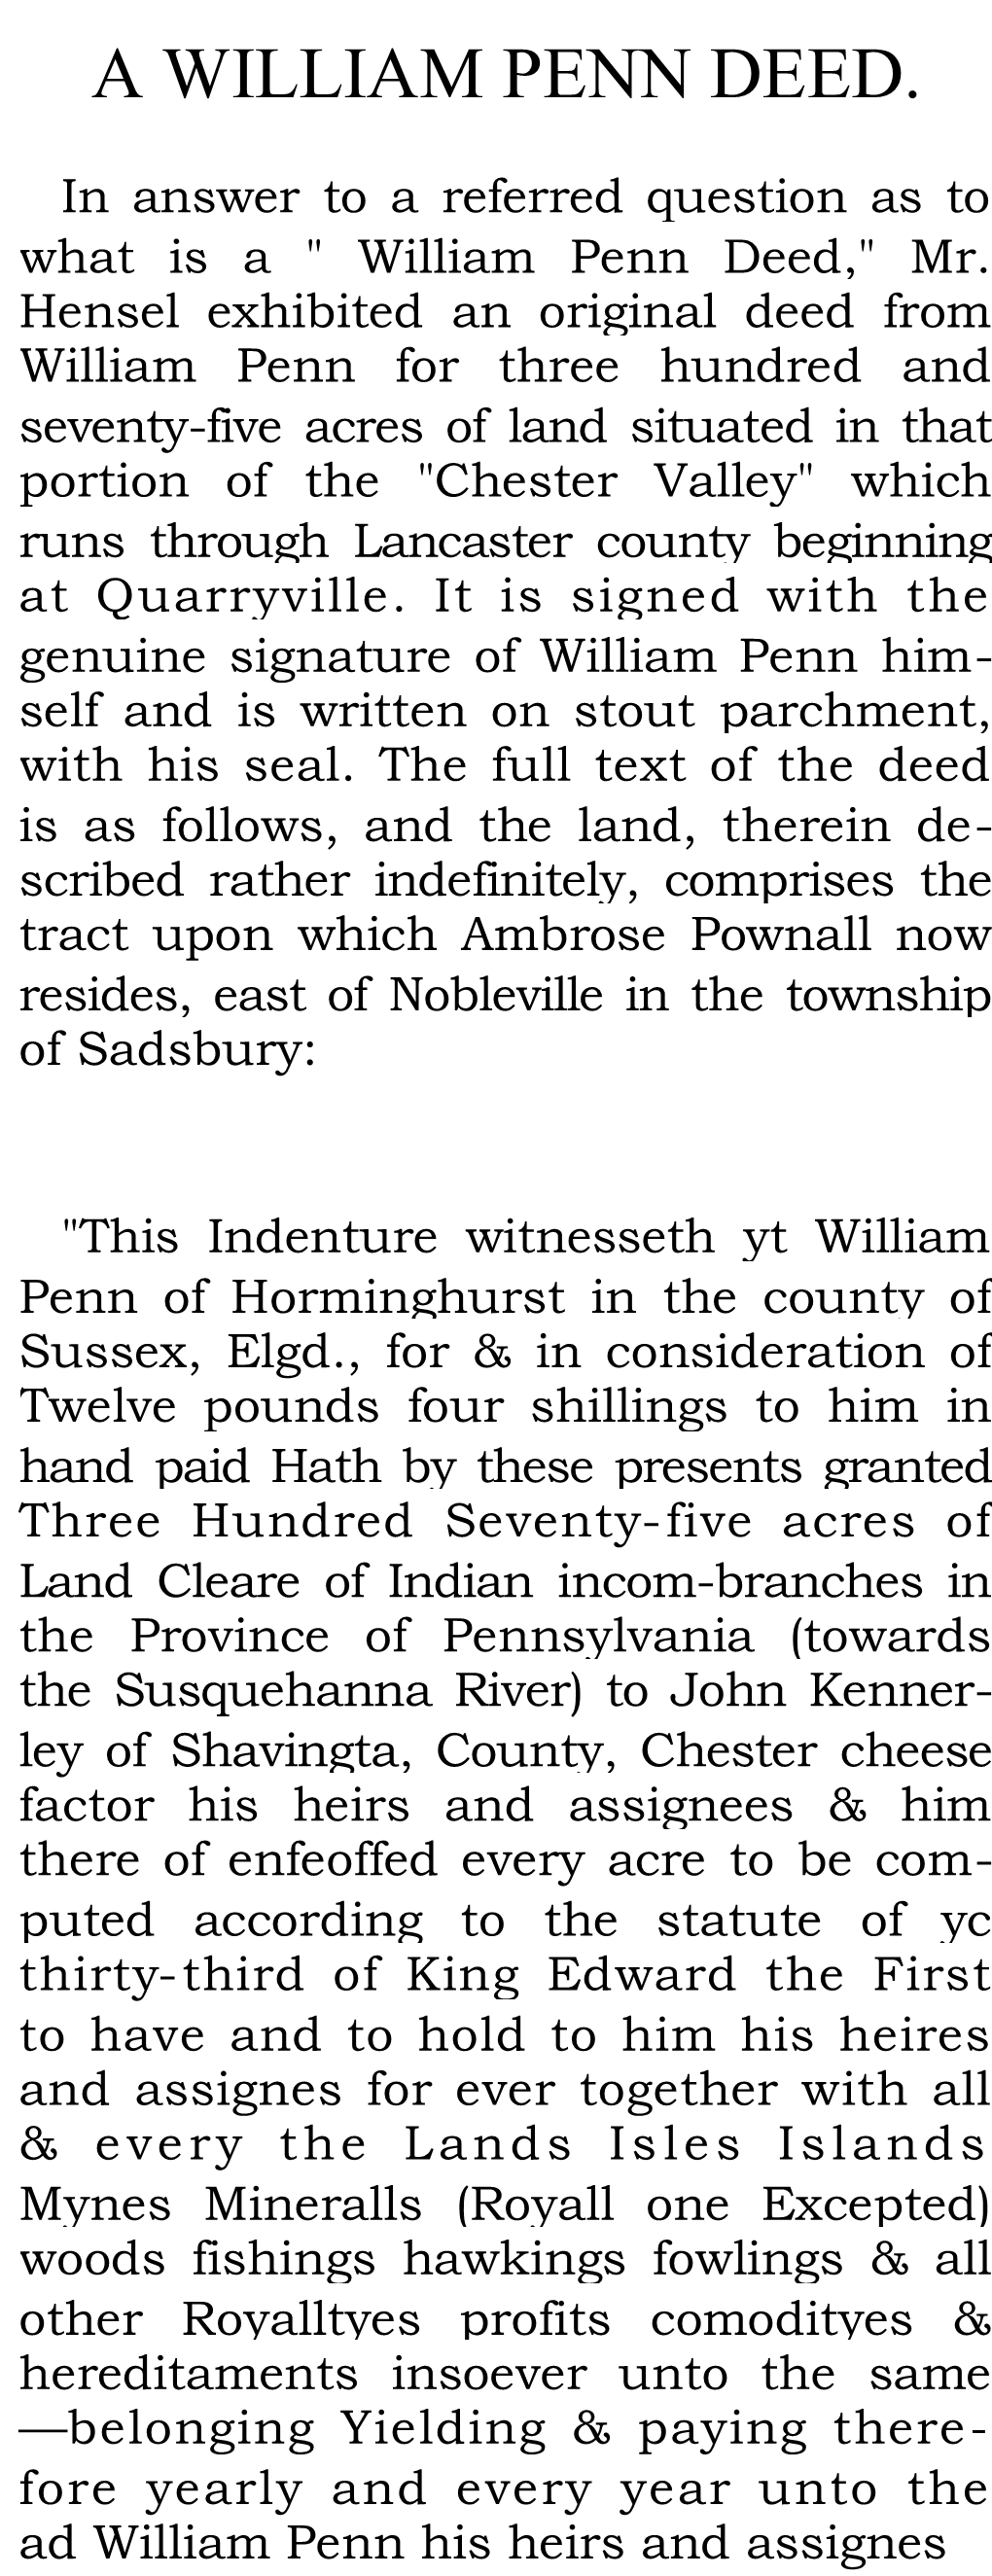 A William Penn Deed